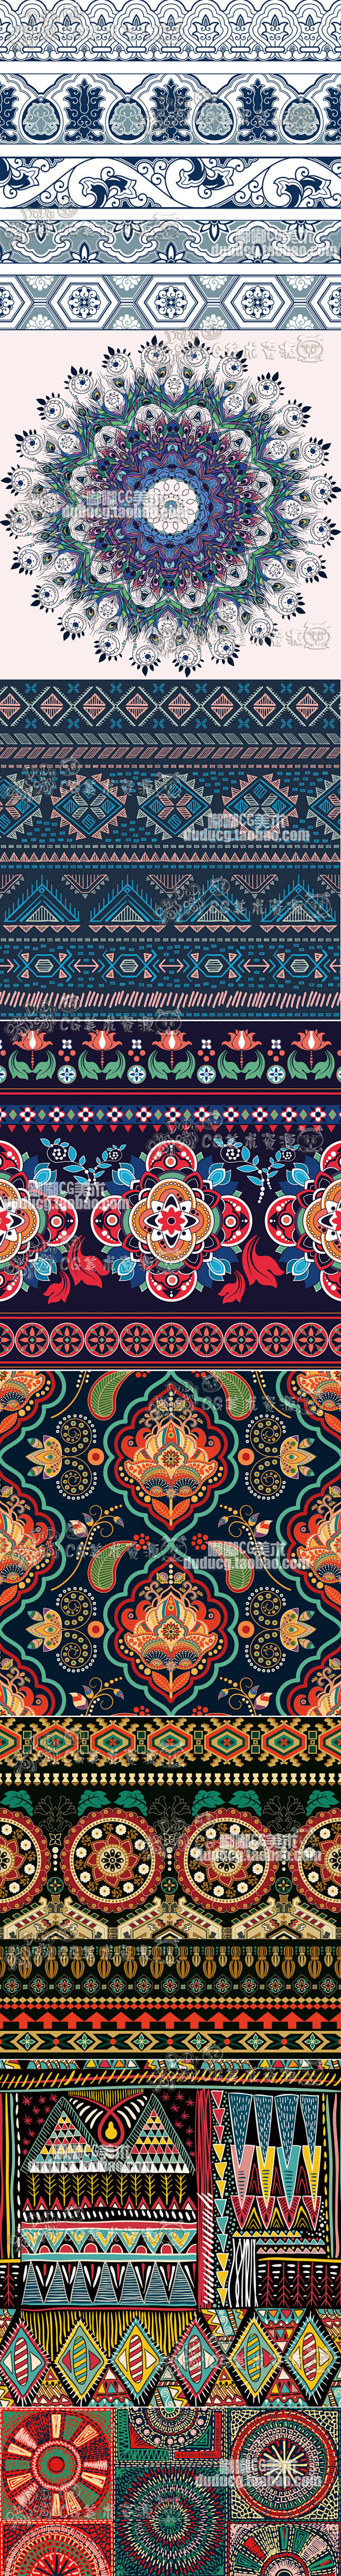 404少数民族藏族特色花纹波西米亚风格纹...